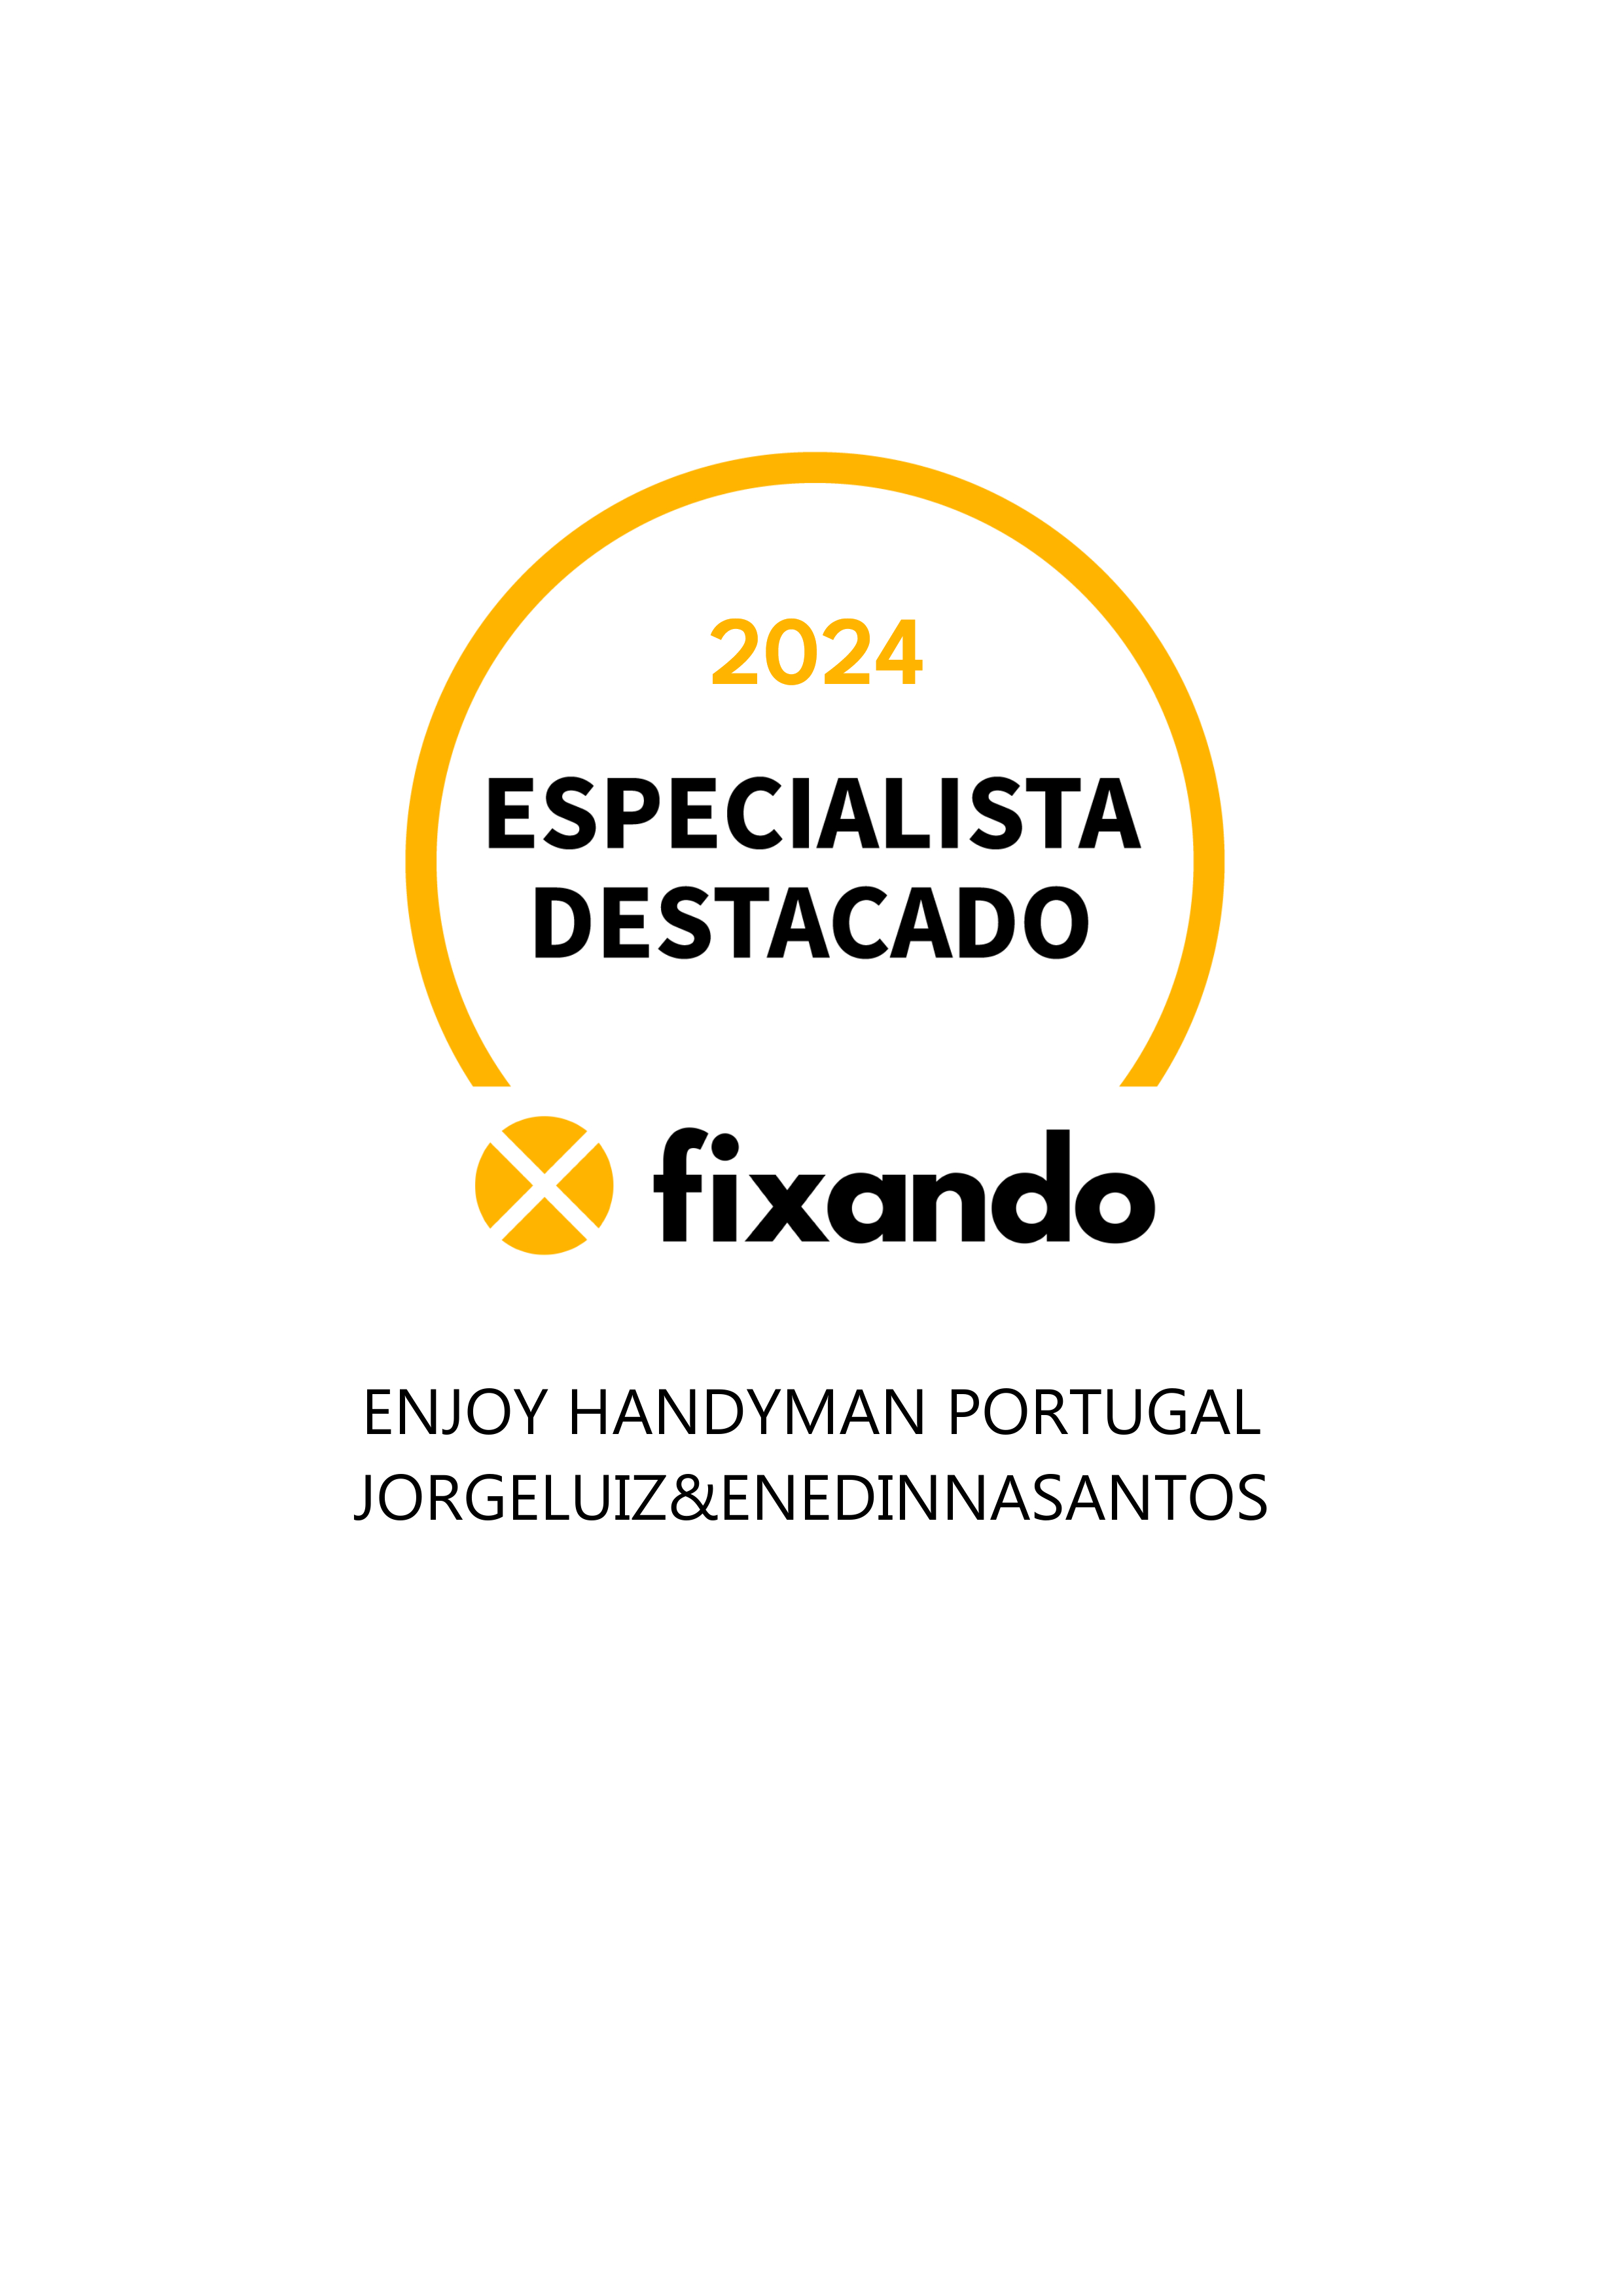 Enjoy Handyman Portugal (JorgeLuiz&EnedinnaSantos) - Vila Nova de Gaia - Reparação de Computador Apple